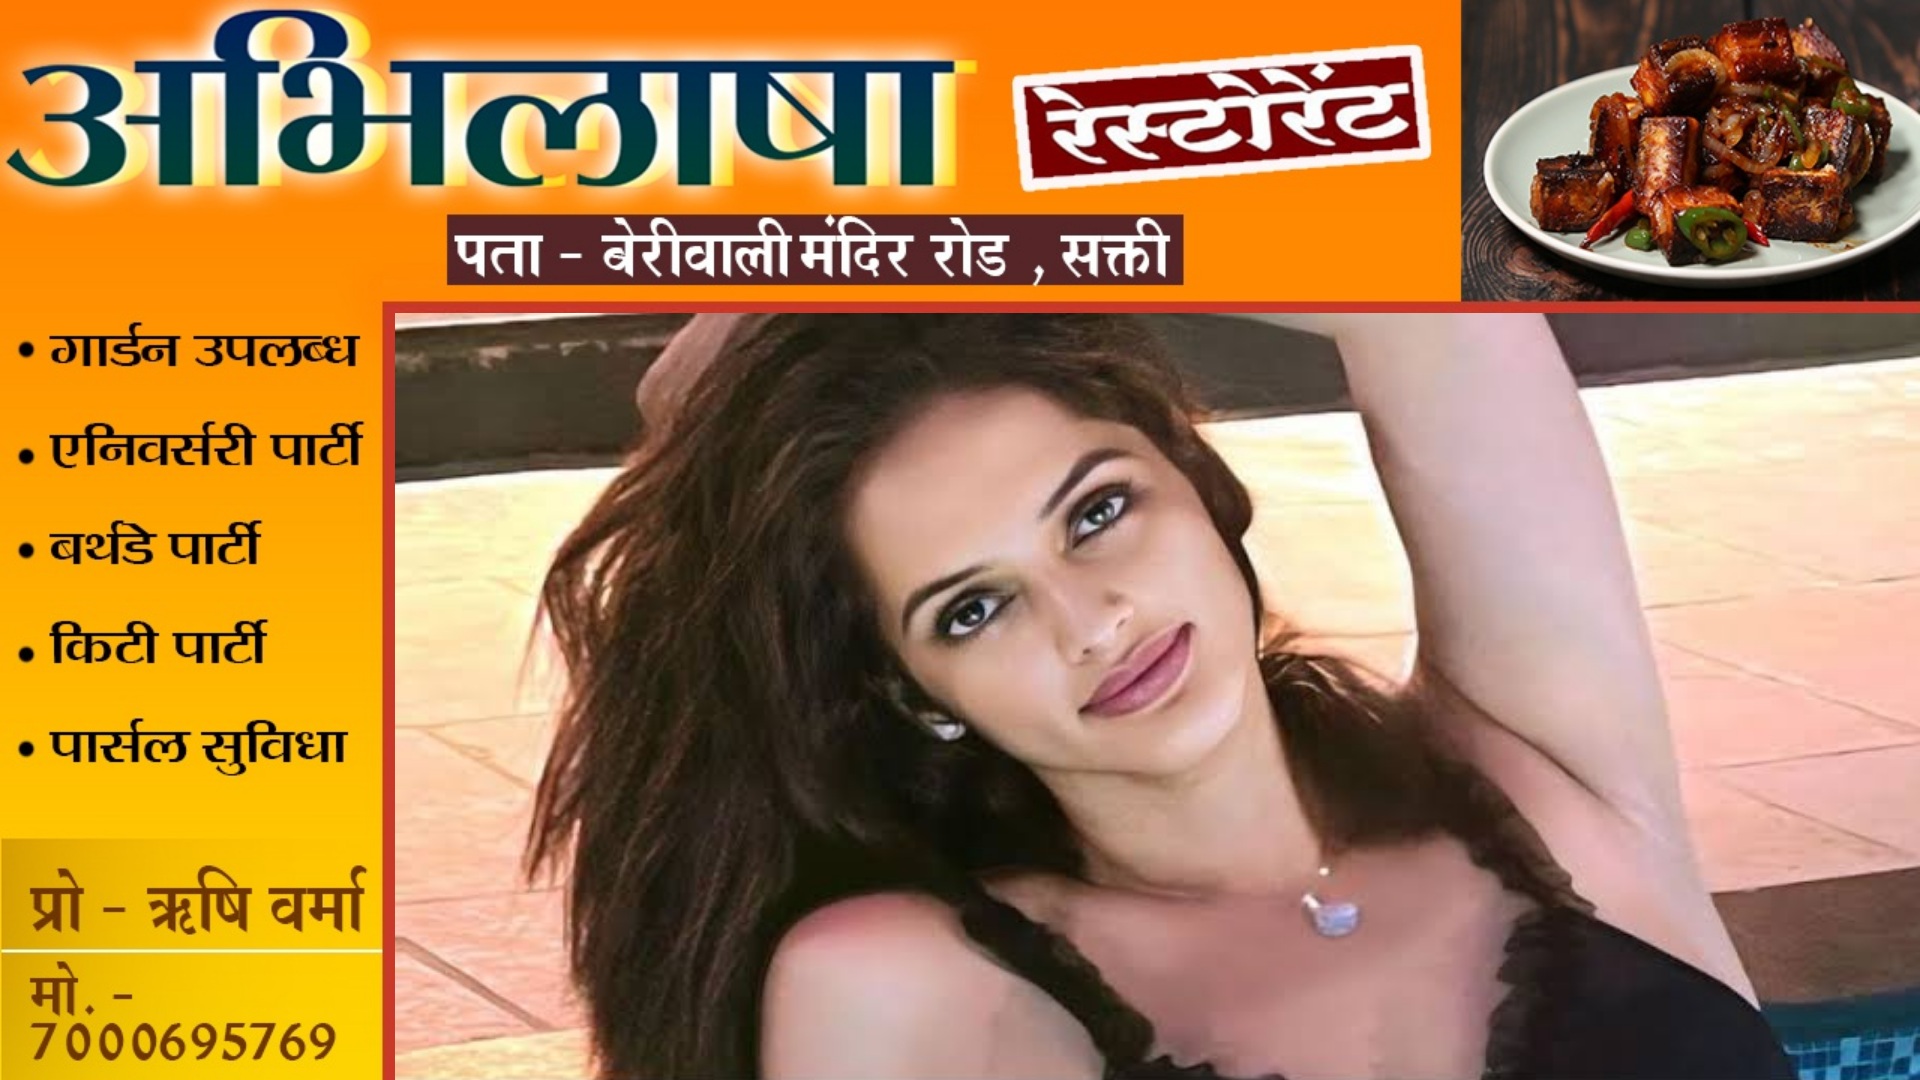 मशहूर TV एक्ट्रेस ज्योति रॉय का सेक्स VIDEO लीक , TV इंडस्ट्री में मचा हड़कंप